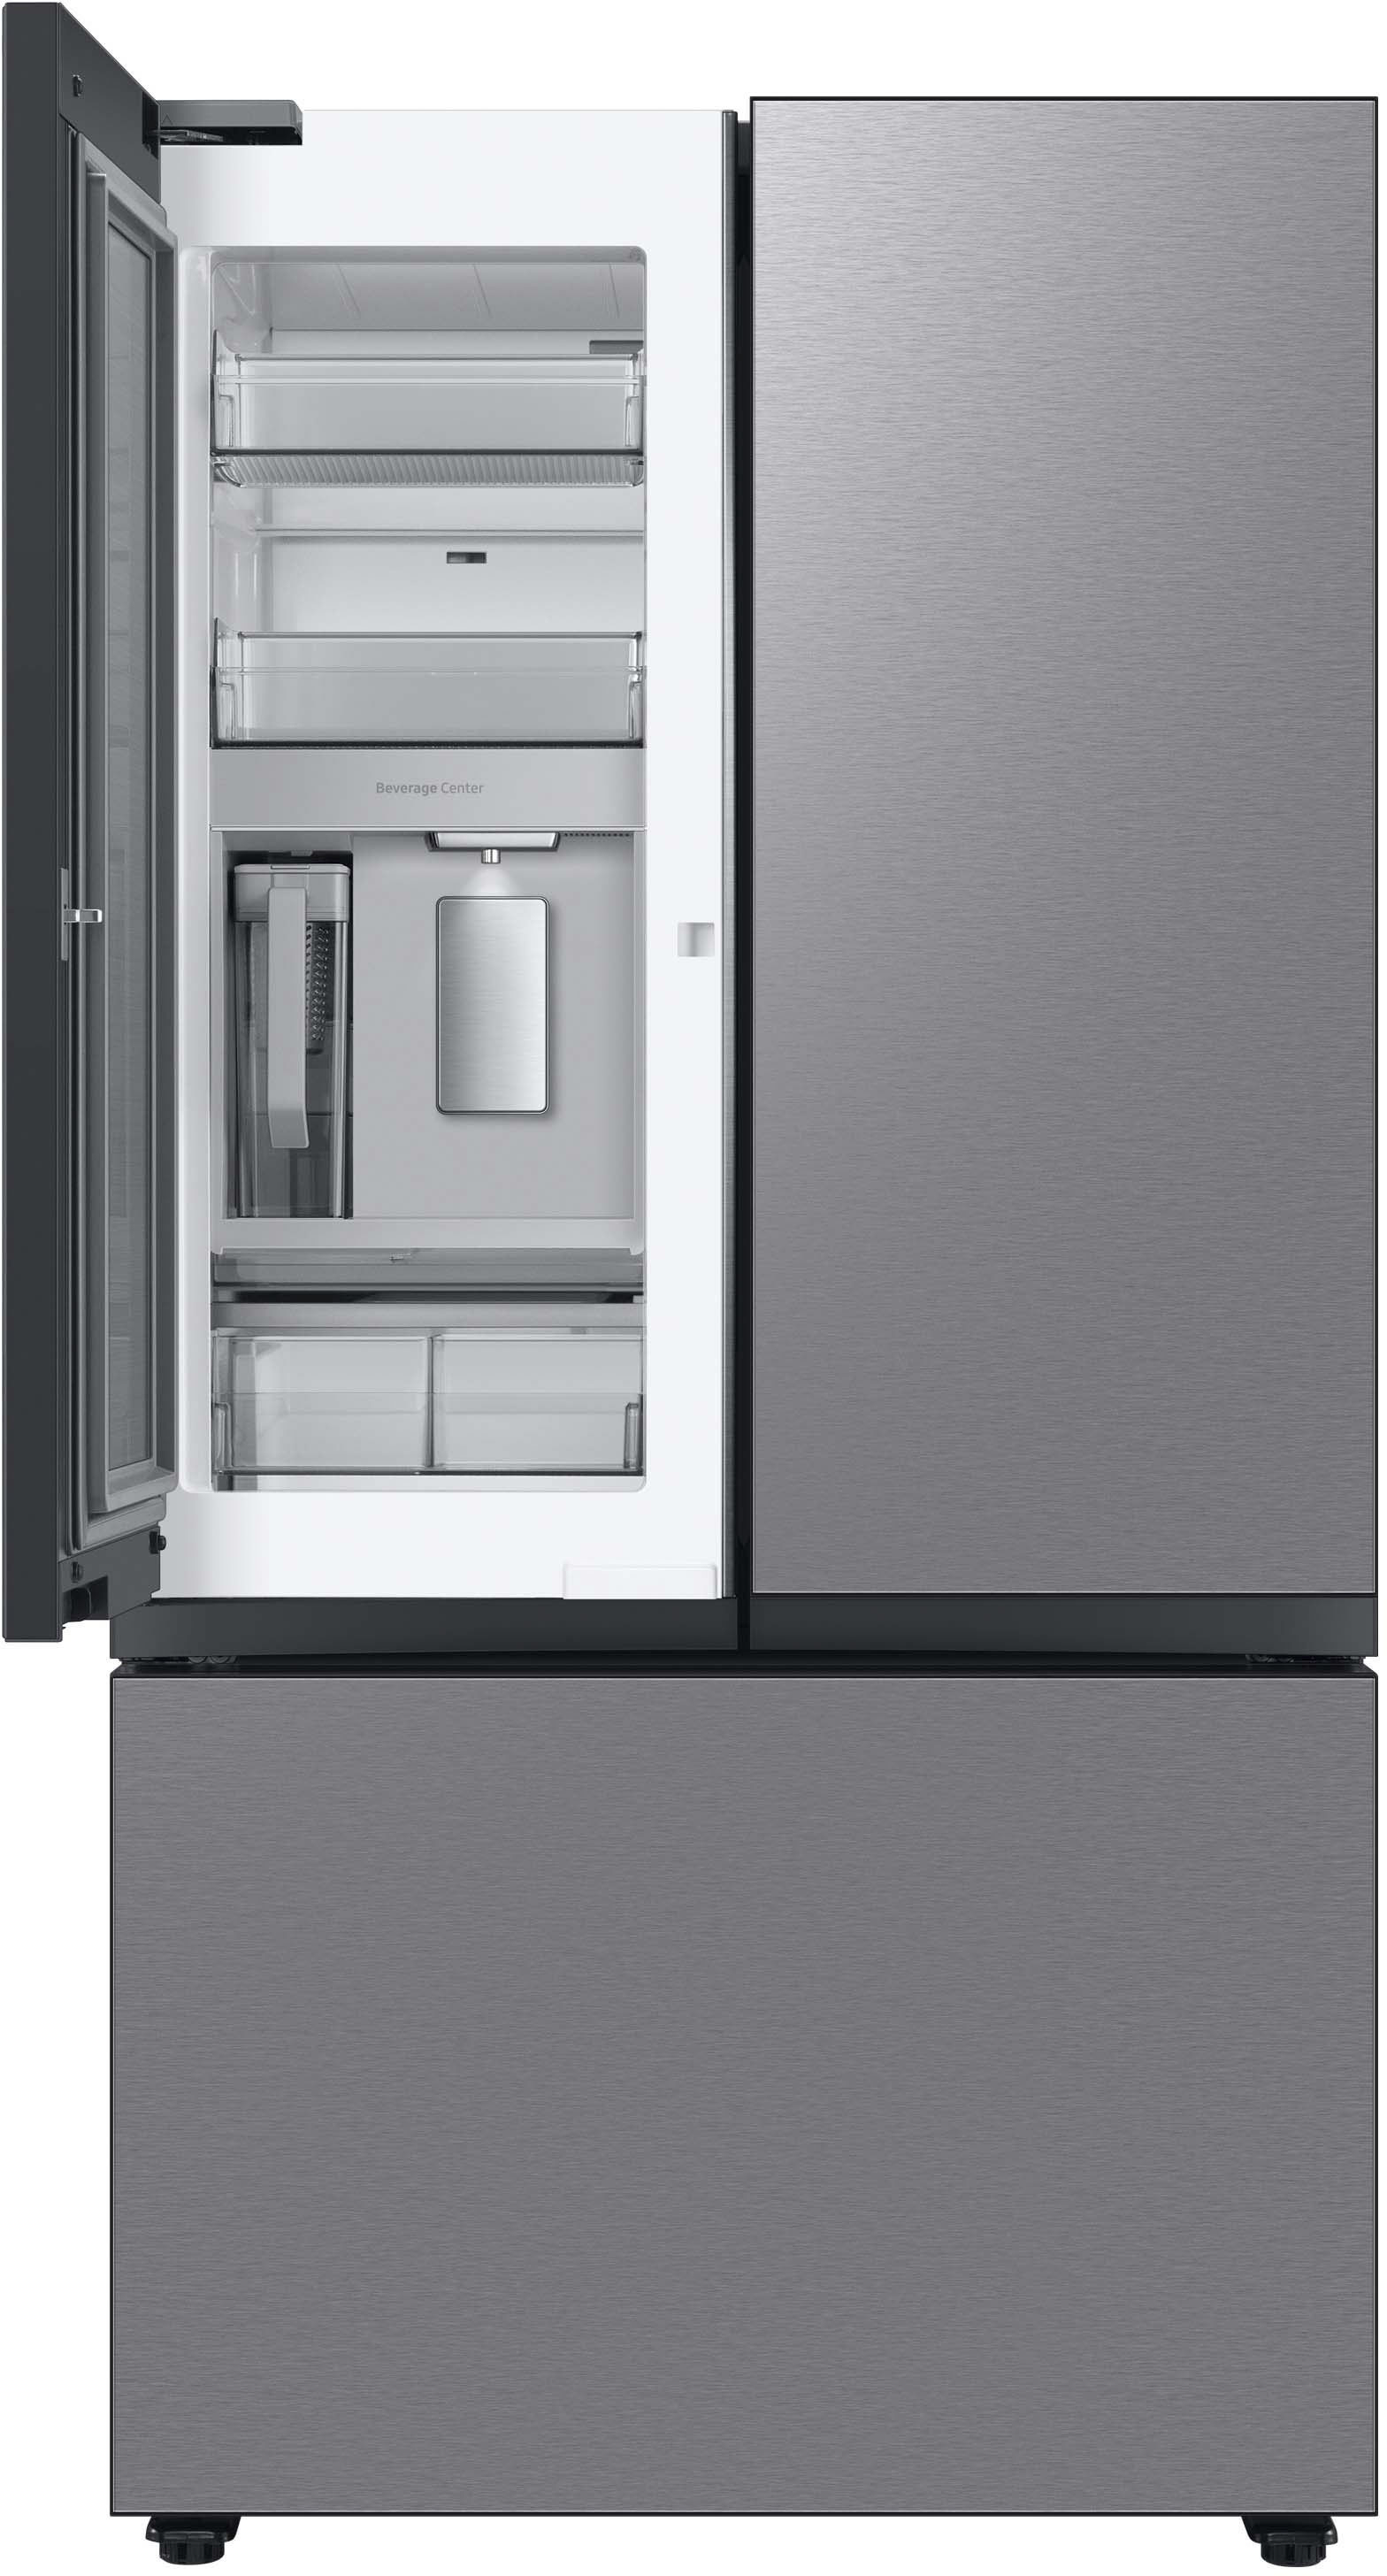 OPEN BOX CLEARANCE Bespoke 30 cu. ft. 4-Door French Door Smart Refrige – WL  APPLIANCES